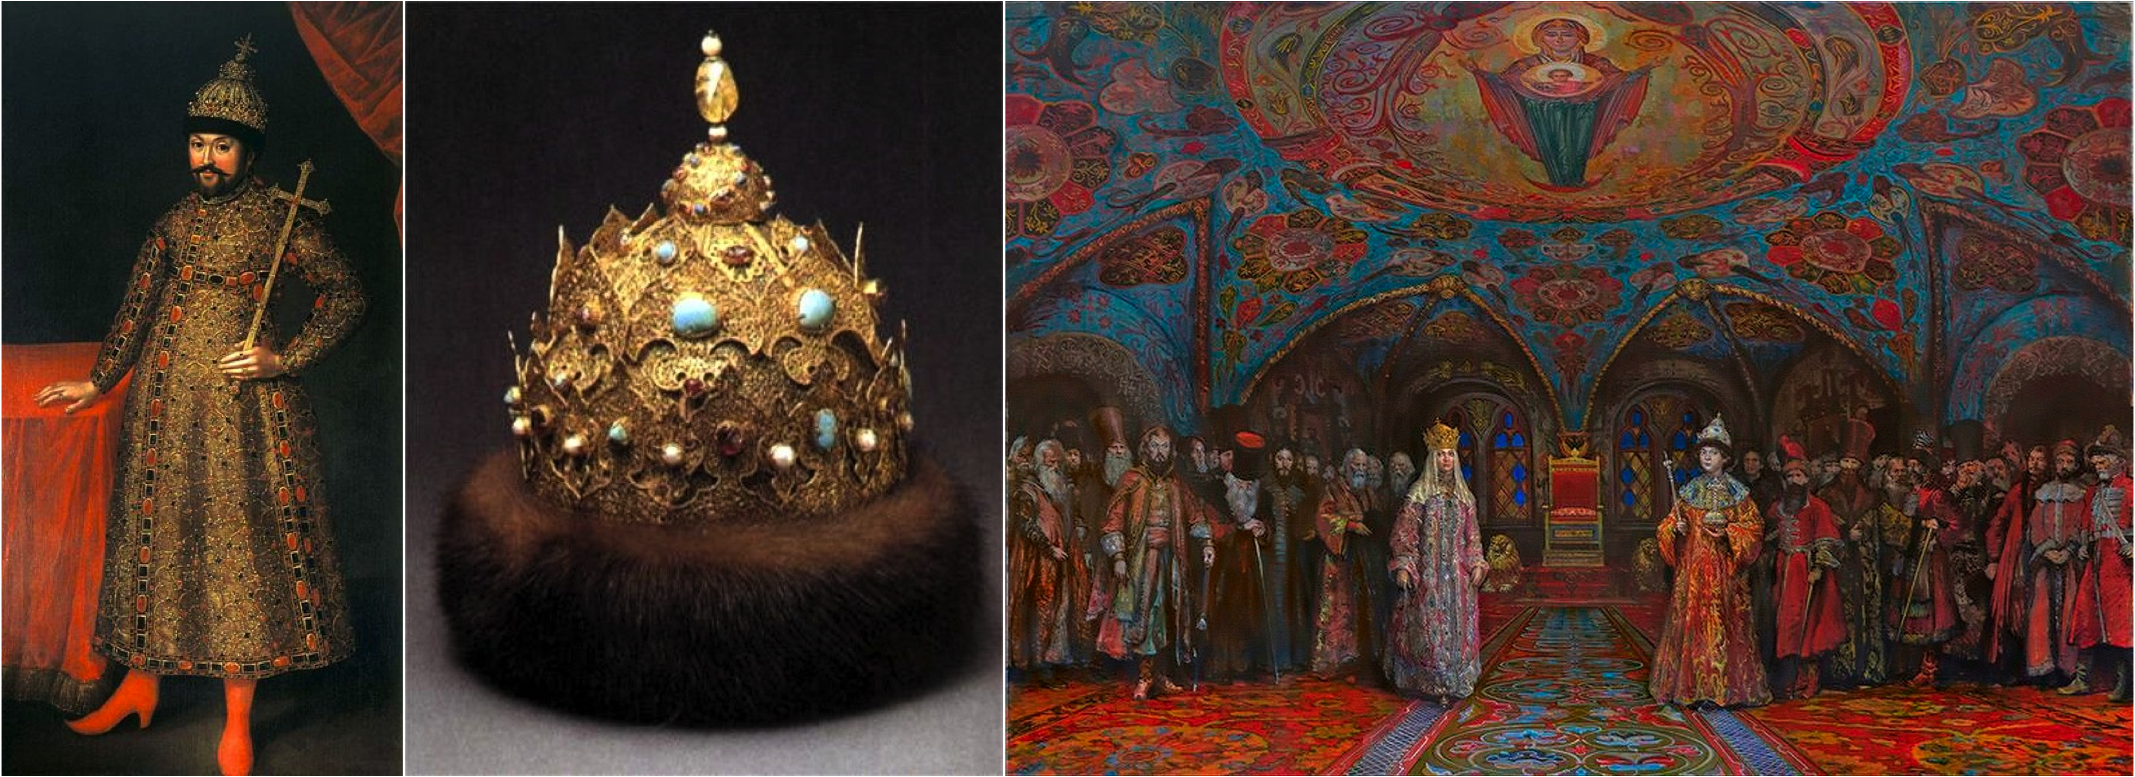 O primeiro Czar da Dinastia Romanov | A coroa dos czares antes da "reforma"| As vestimentas russas antes de Pedro O Grande